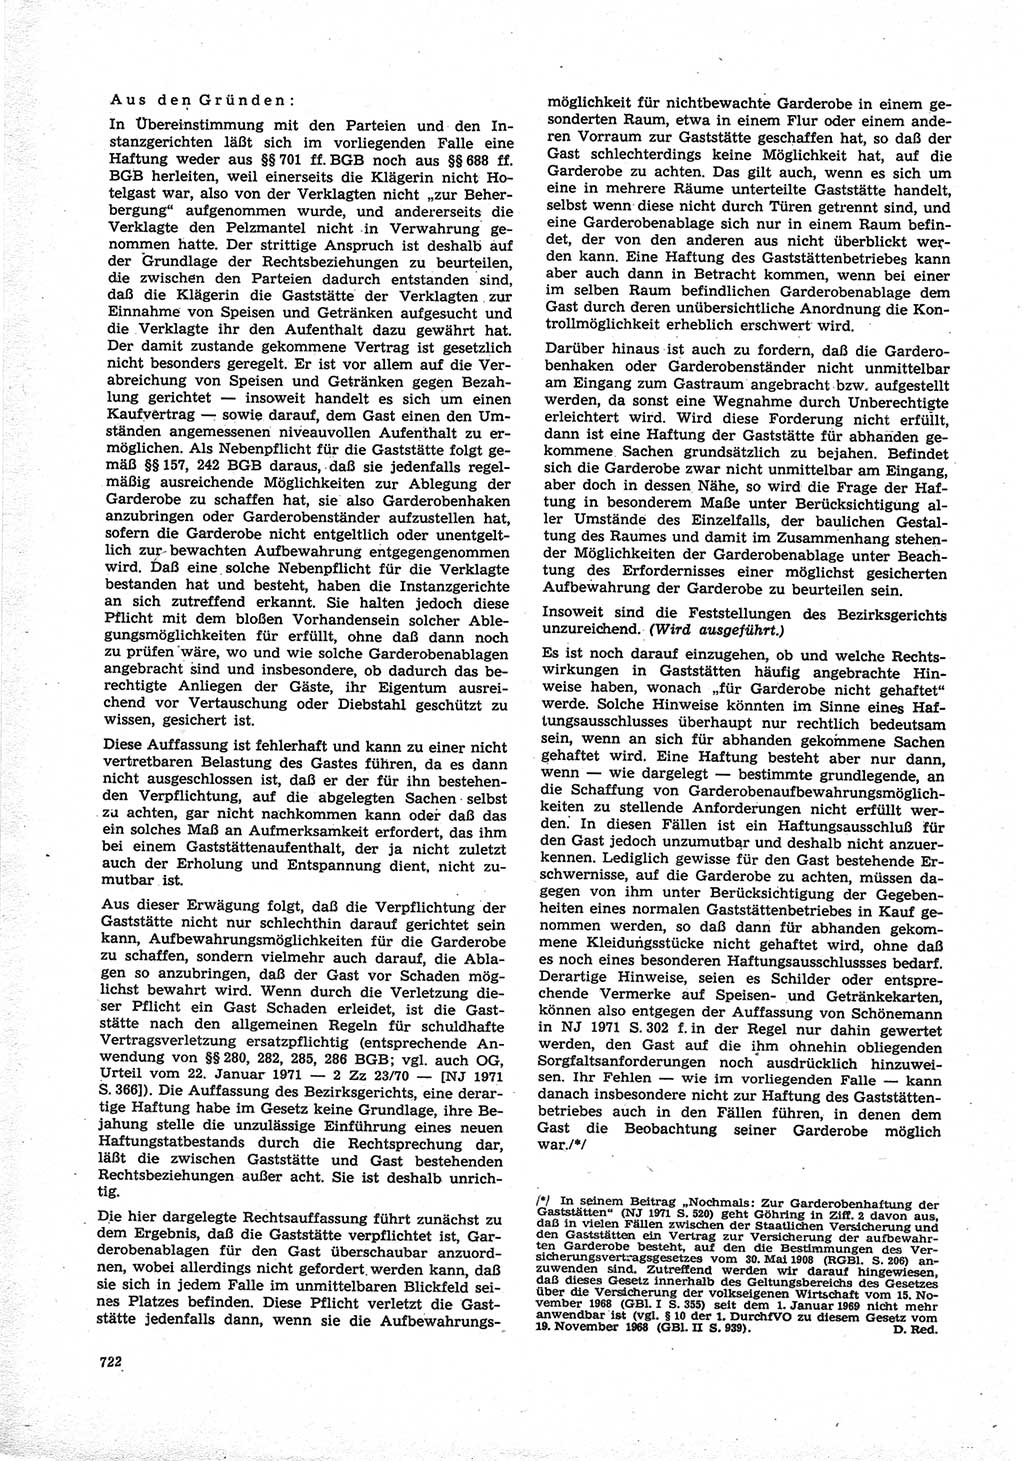 Neue Justiz (NJ), Zeitschrift für Recht und Rechtswissenschaft [Deutsche Demokratische Republik (DDR)], 25. Jahrgang 1971, Seite 722 (NJ DDR 1971, S. 722)